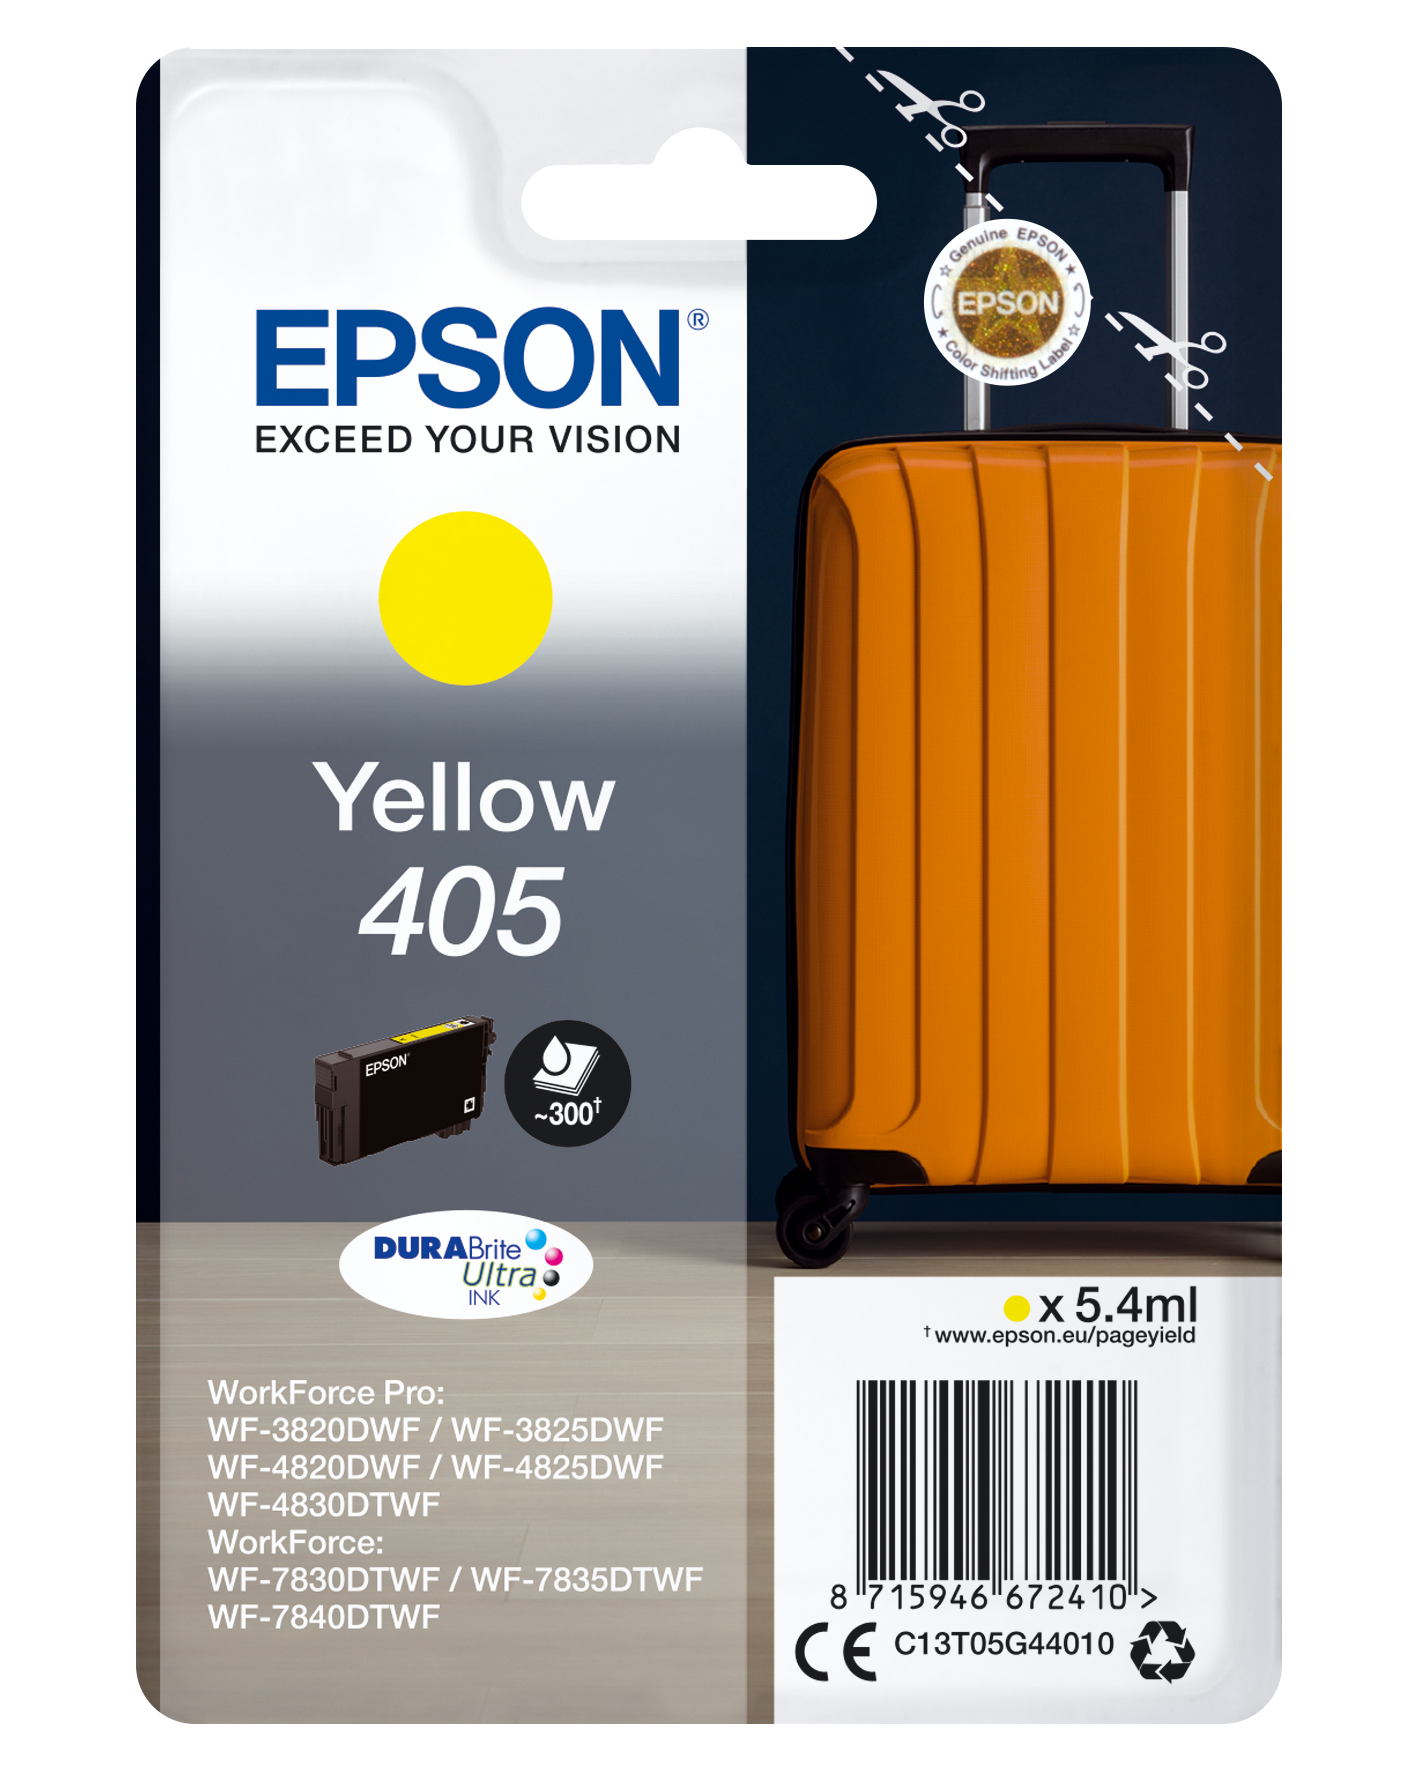 Epson Singlepack Yellow 405 DURABrite Ultra Ink single pack / geel